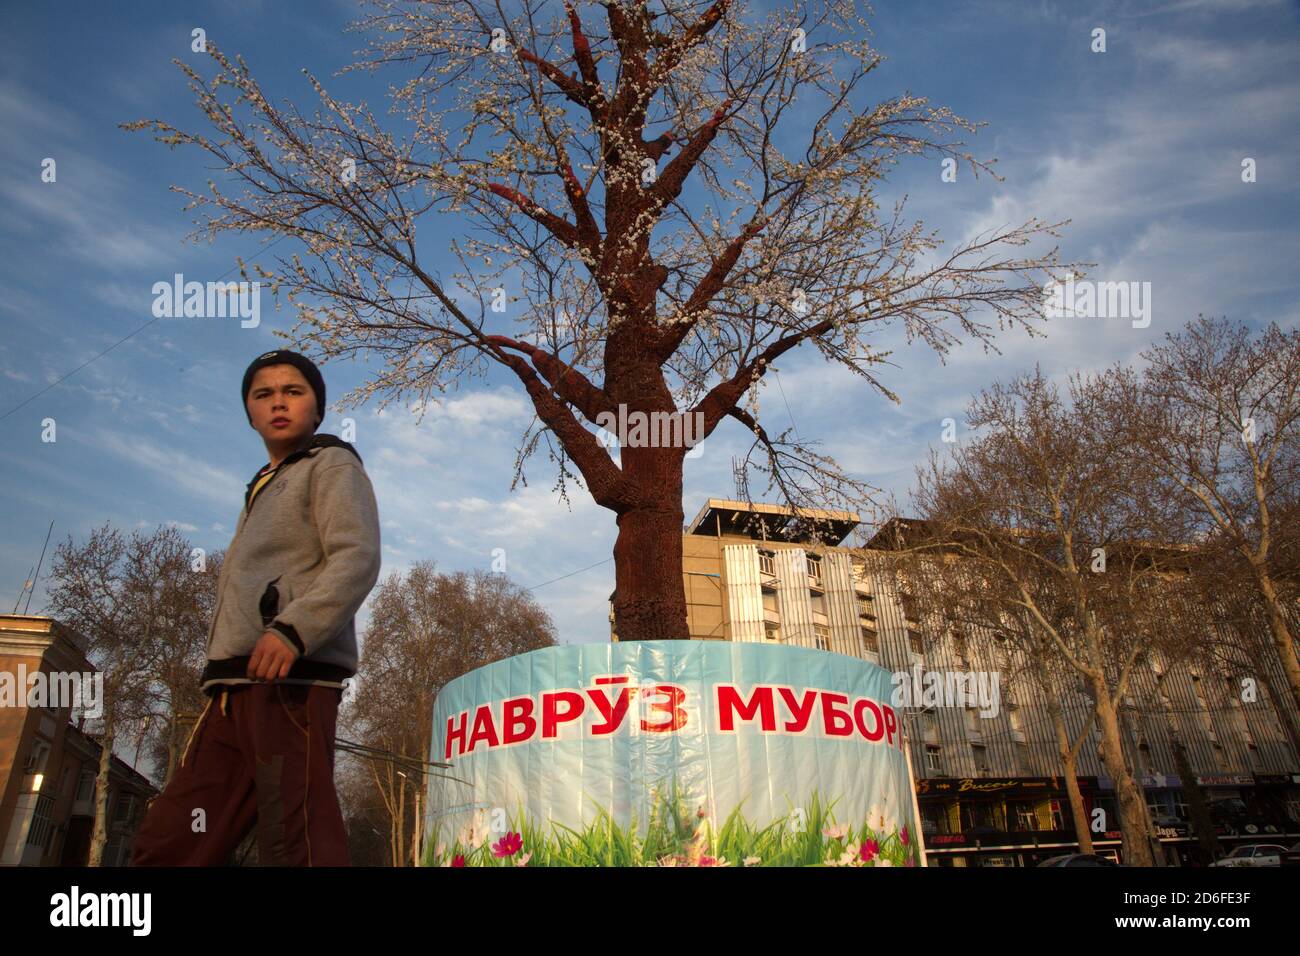 Città di Khujand, Tagikistan. 17 marzo 2015. Decorazioni di New Year Nowruz sulla strada centrale della città di Khujand, Tagikistan. Il banner recita 'Happy Nowruz' Foto Stock